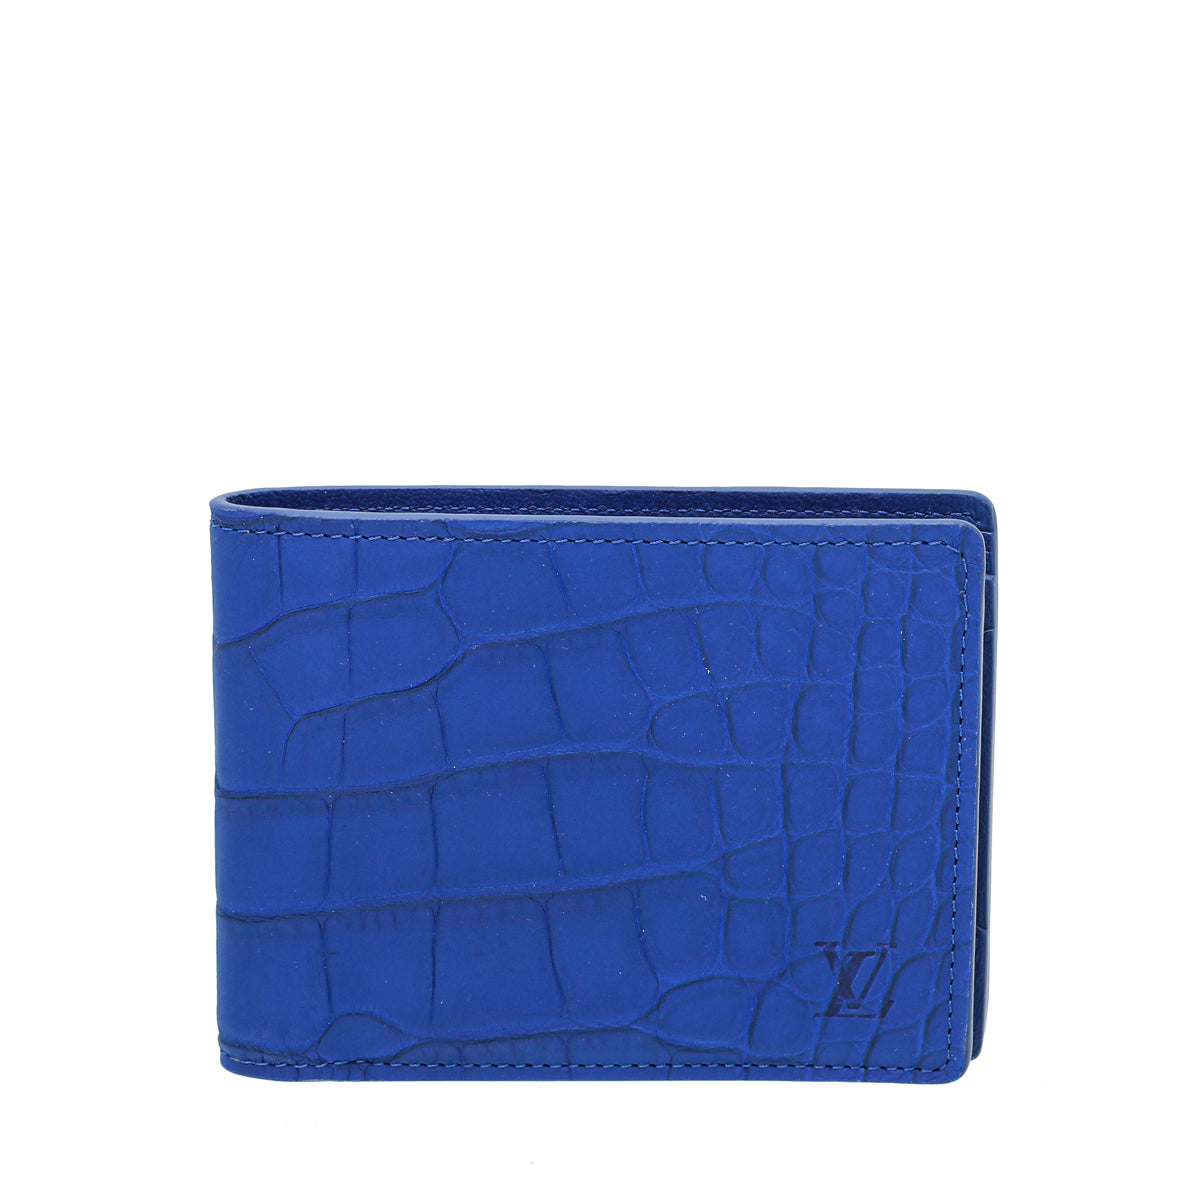 Louis Vuitton Blue Leather Wallet